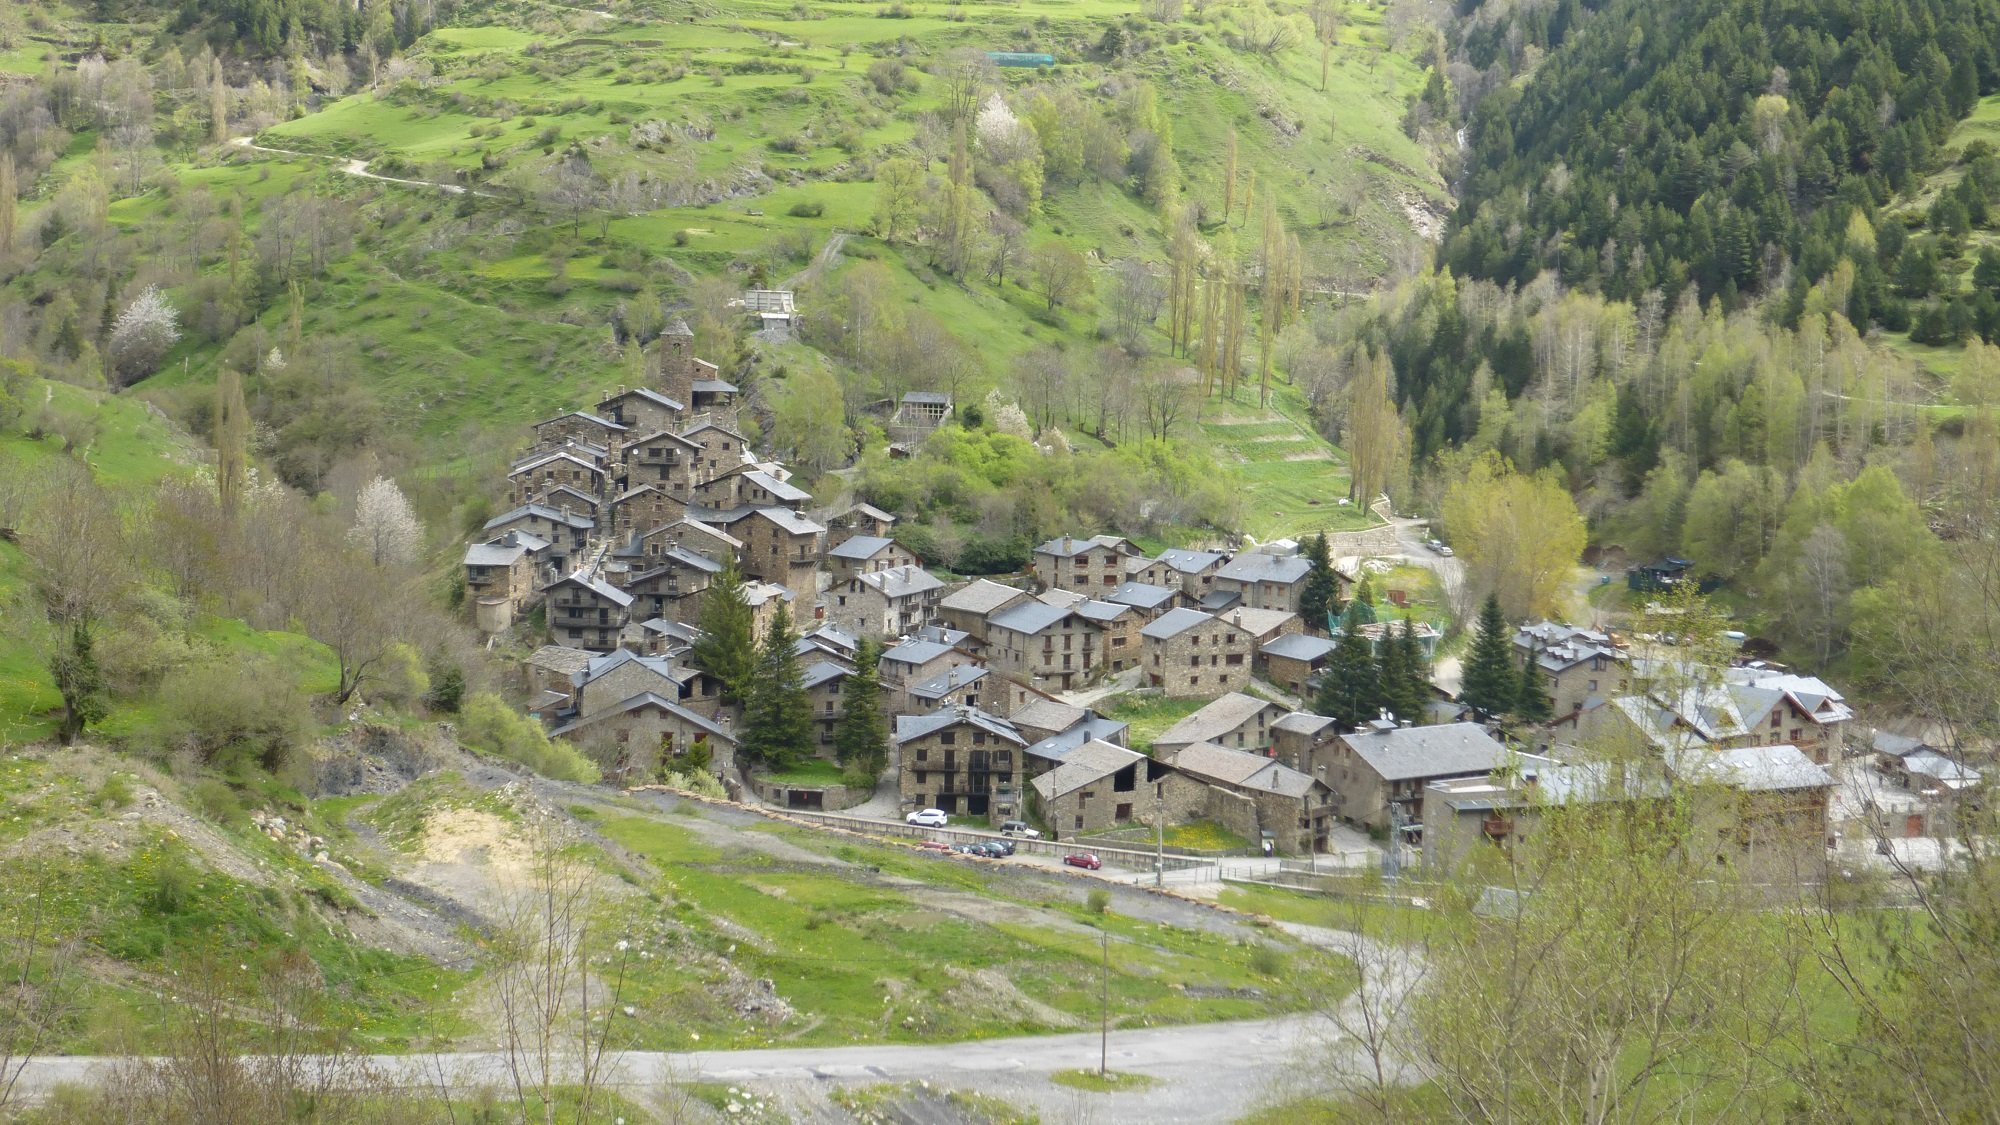 Un terremoto de magnitud 3,6 sacude el Alt Urgell y Andorra